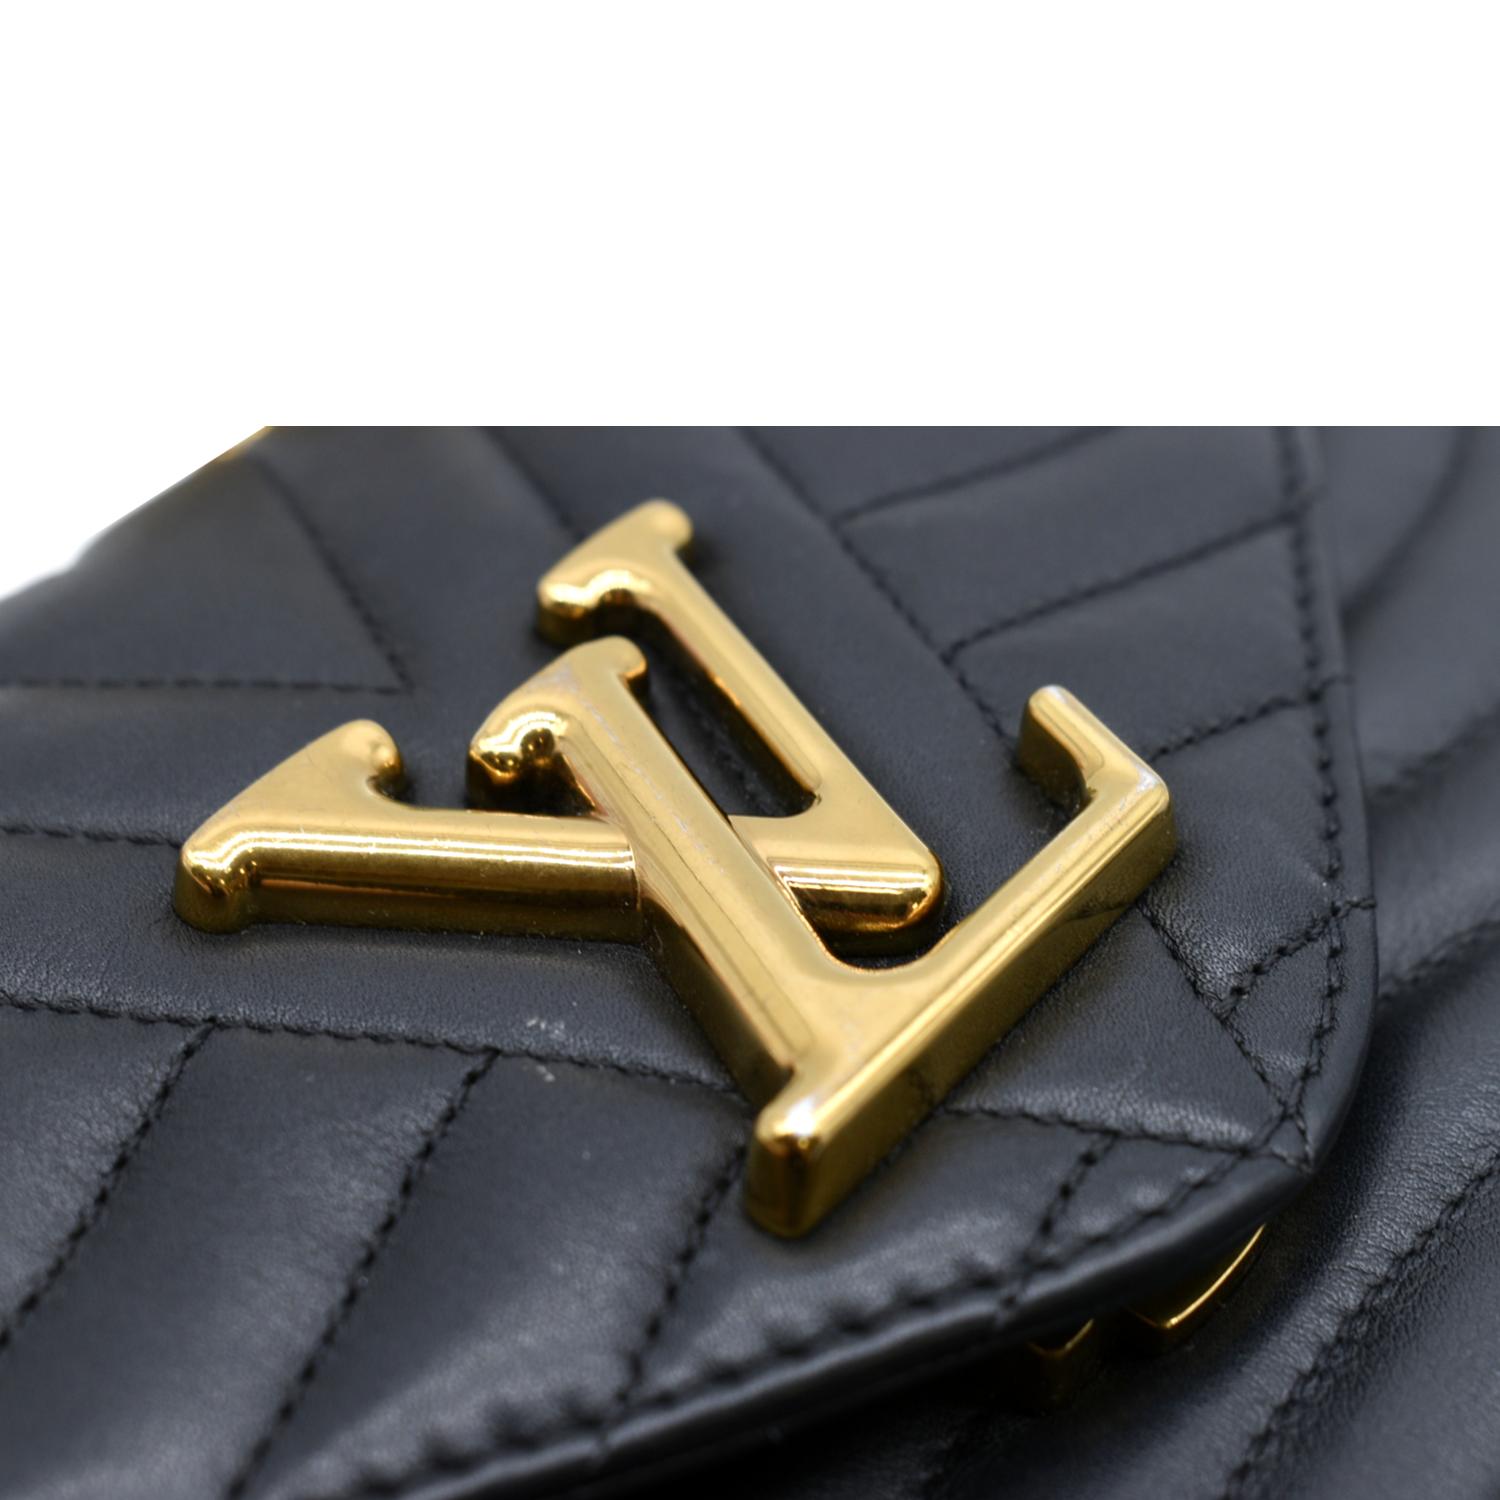 Louis Vuitton New Wave Wallet Black